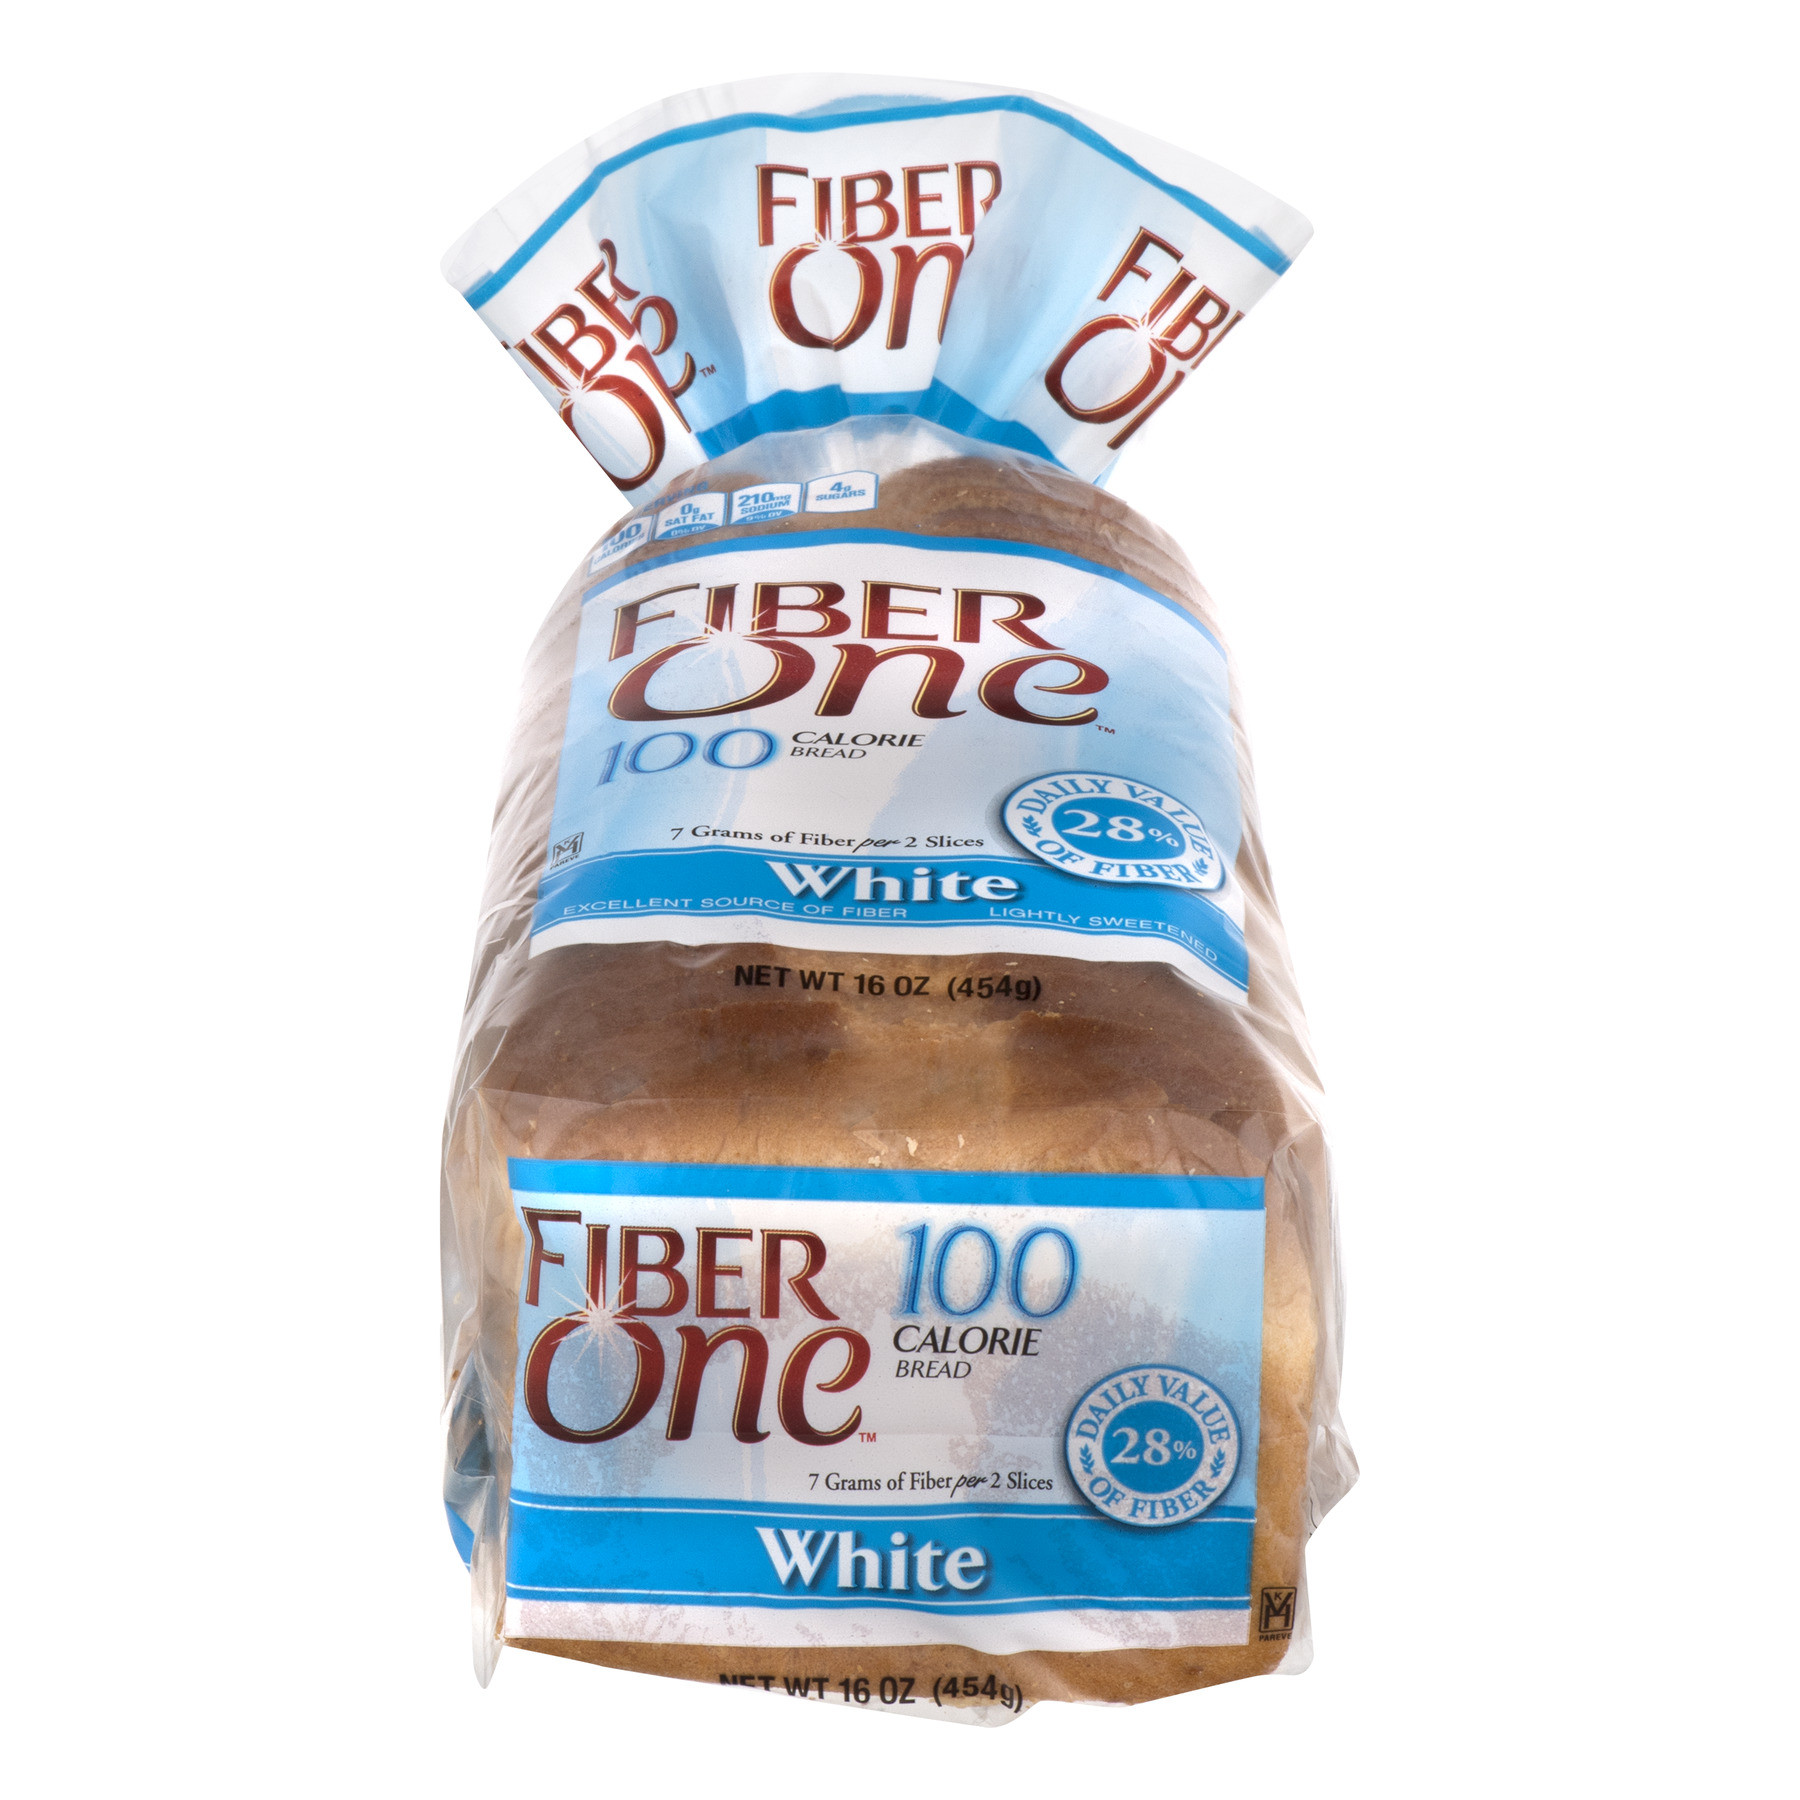 Fiber In White Bread
 Fiber e 100 Calorie Bread White Walmart